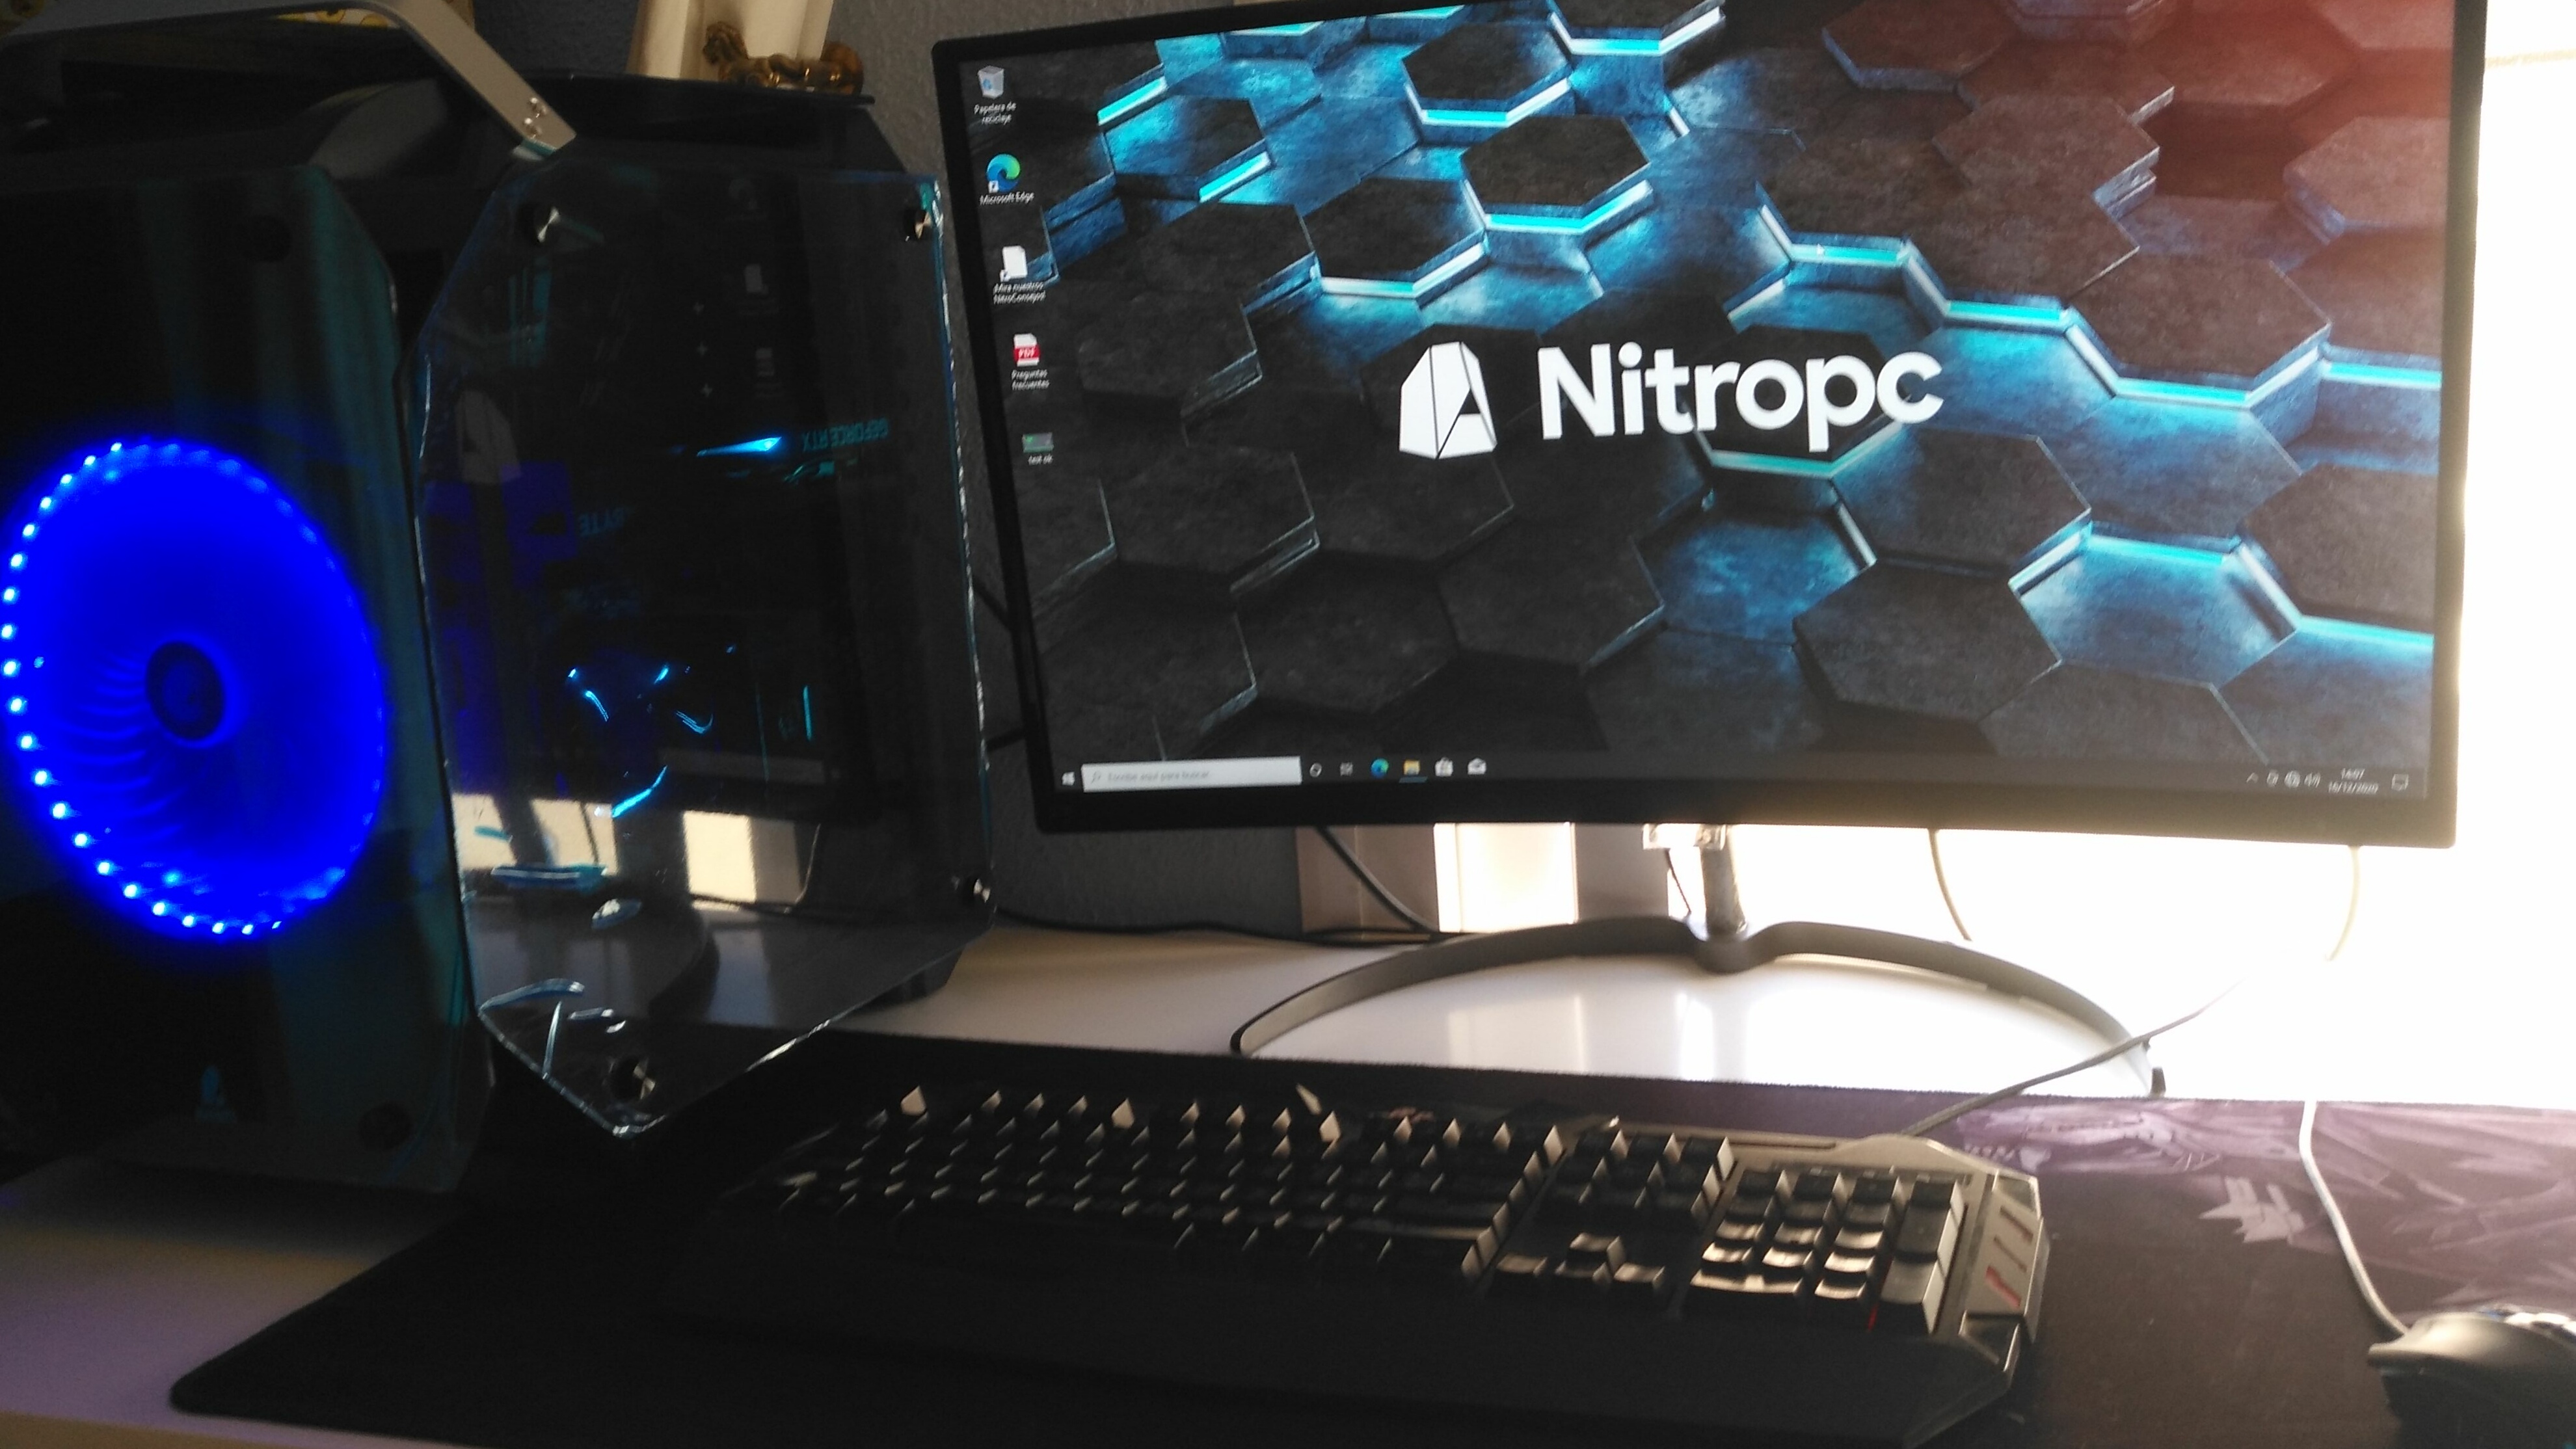 Extremo Nitro i7 - Excelente servicio y excelente ordenador